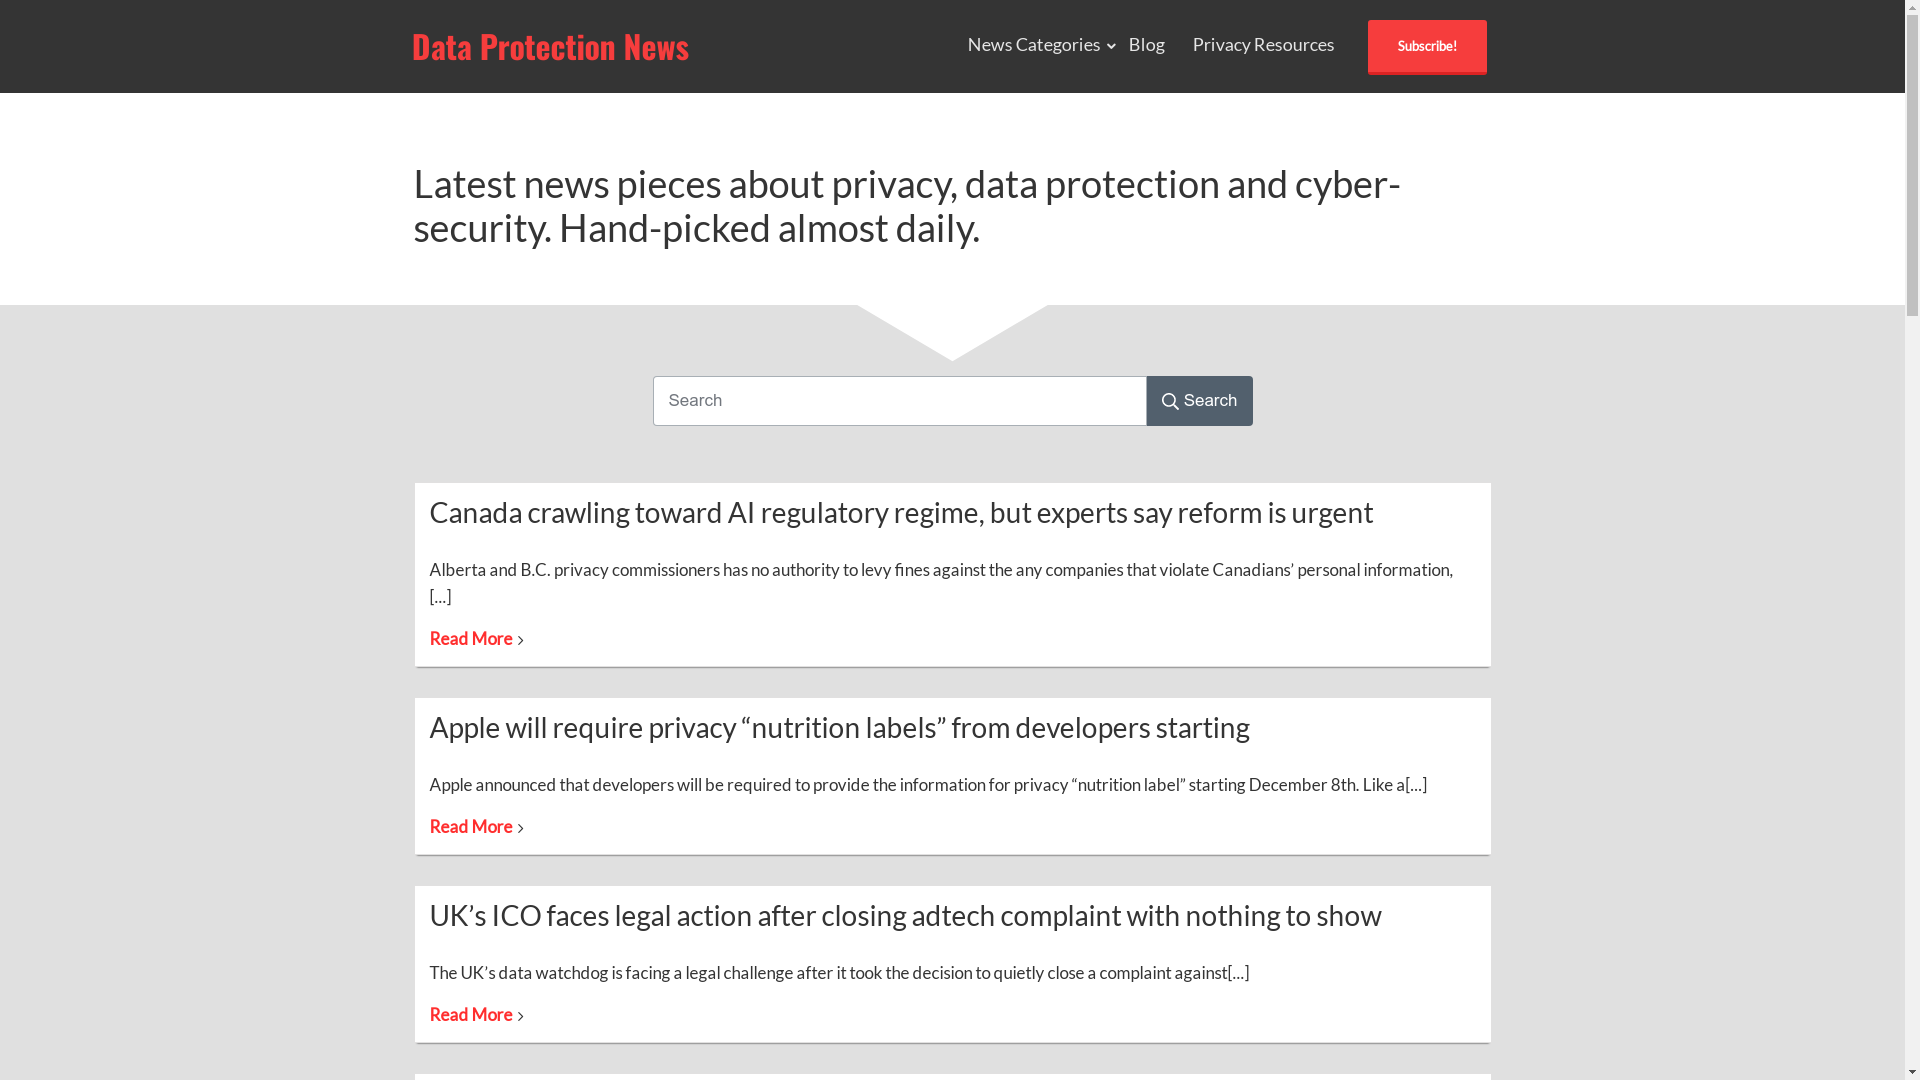 Data protection news